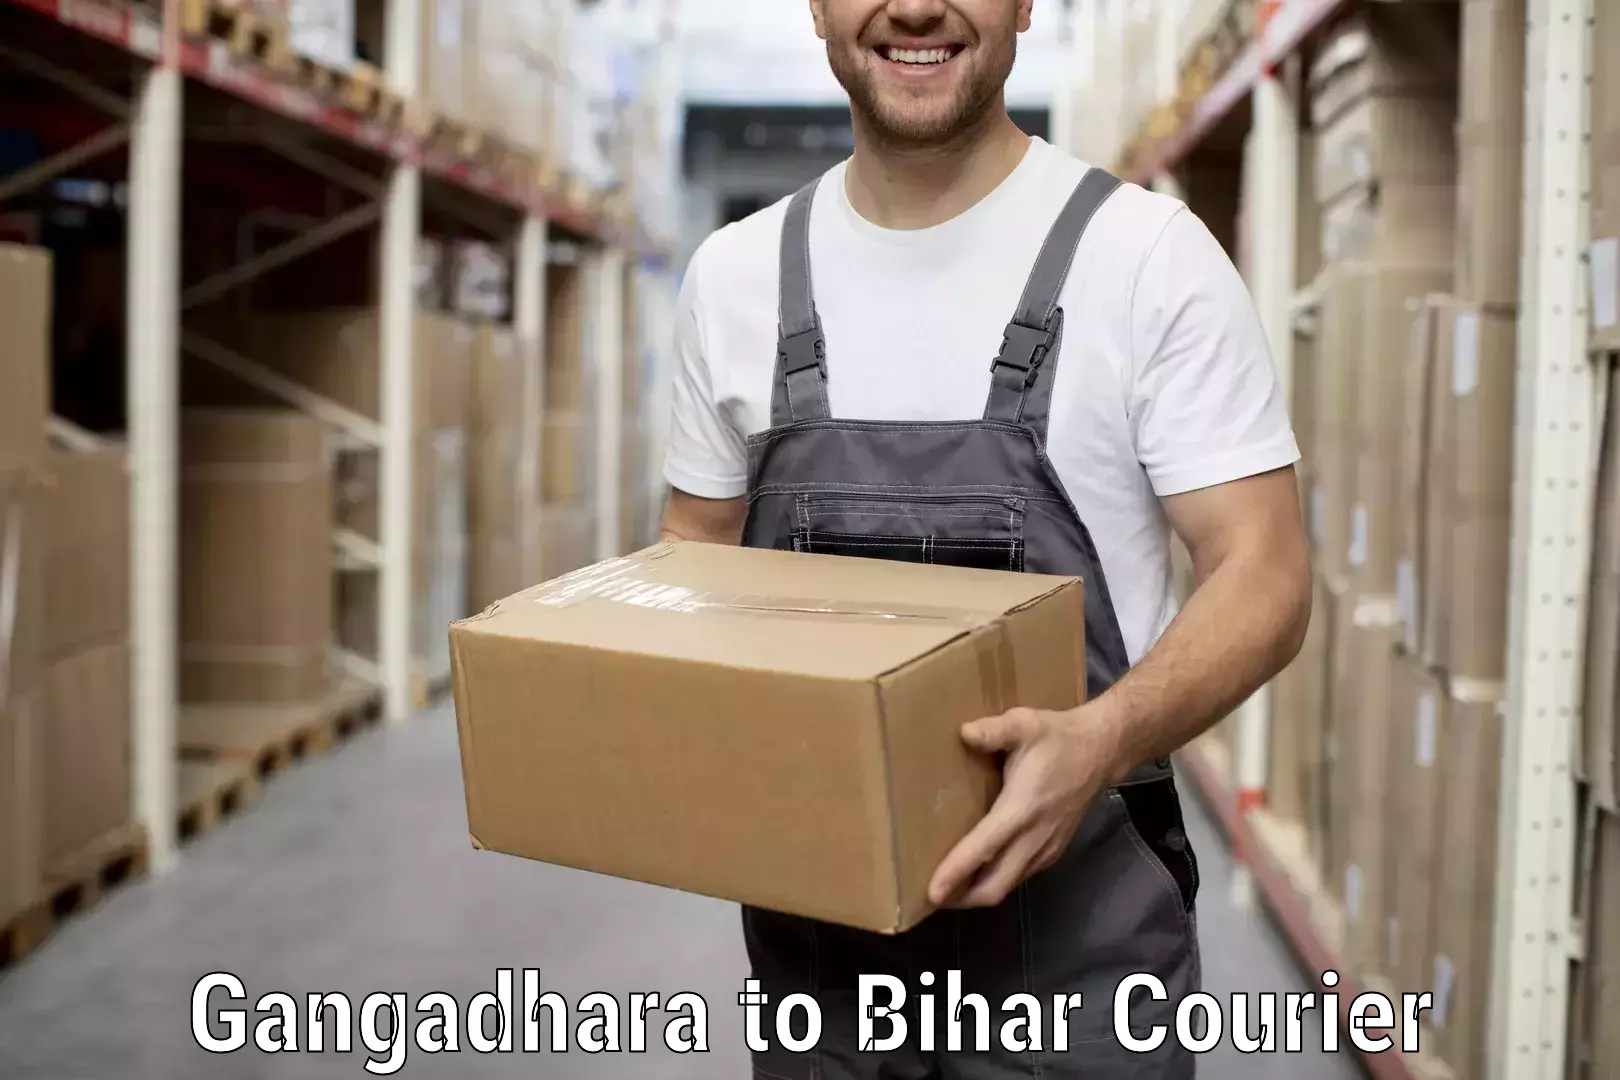 Efficient moving company Gangadhara to Gaya